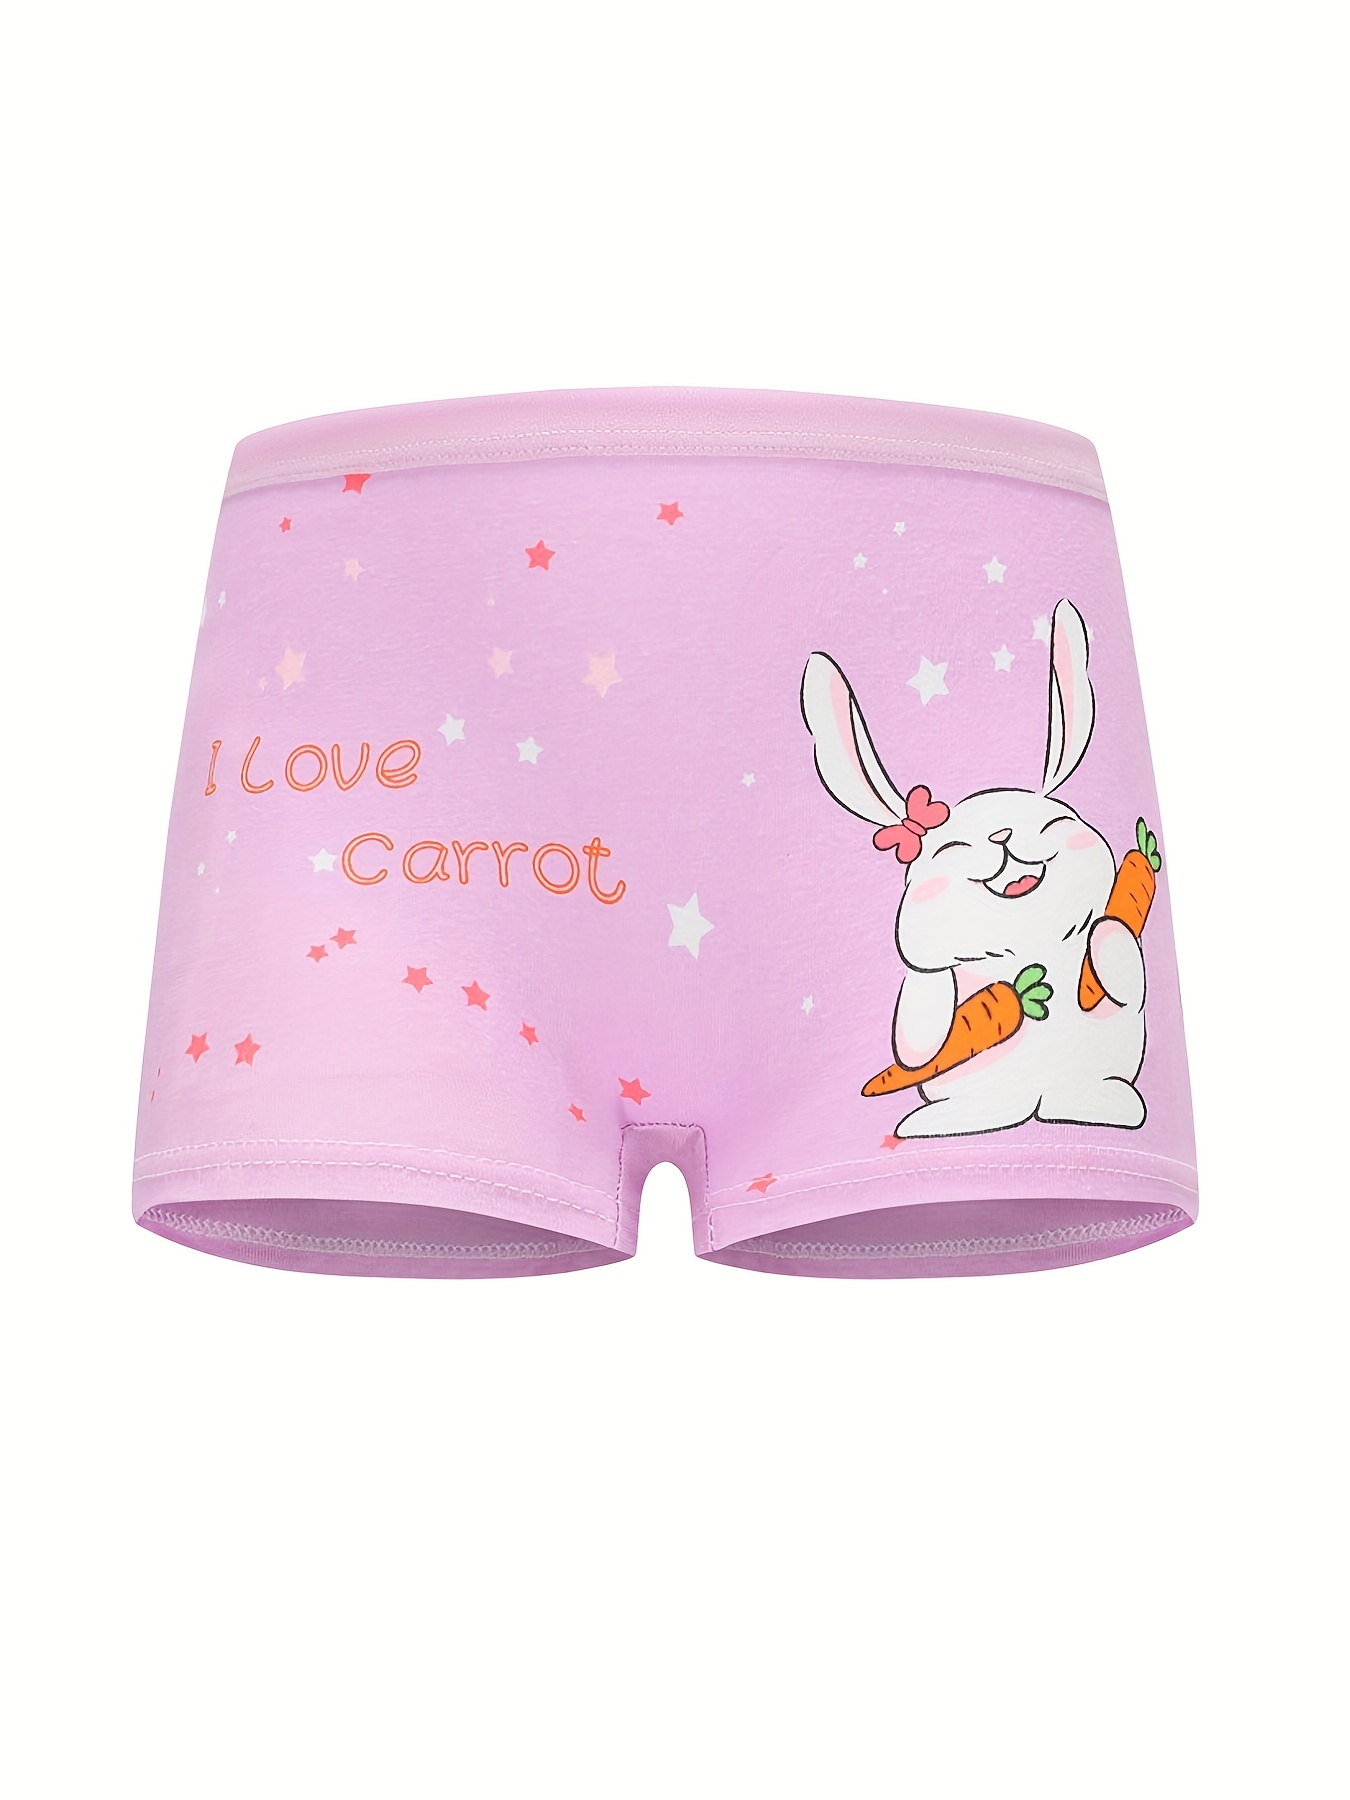 Girl Cartoon Boxers Children Cotton Underwear Kids Princess